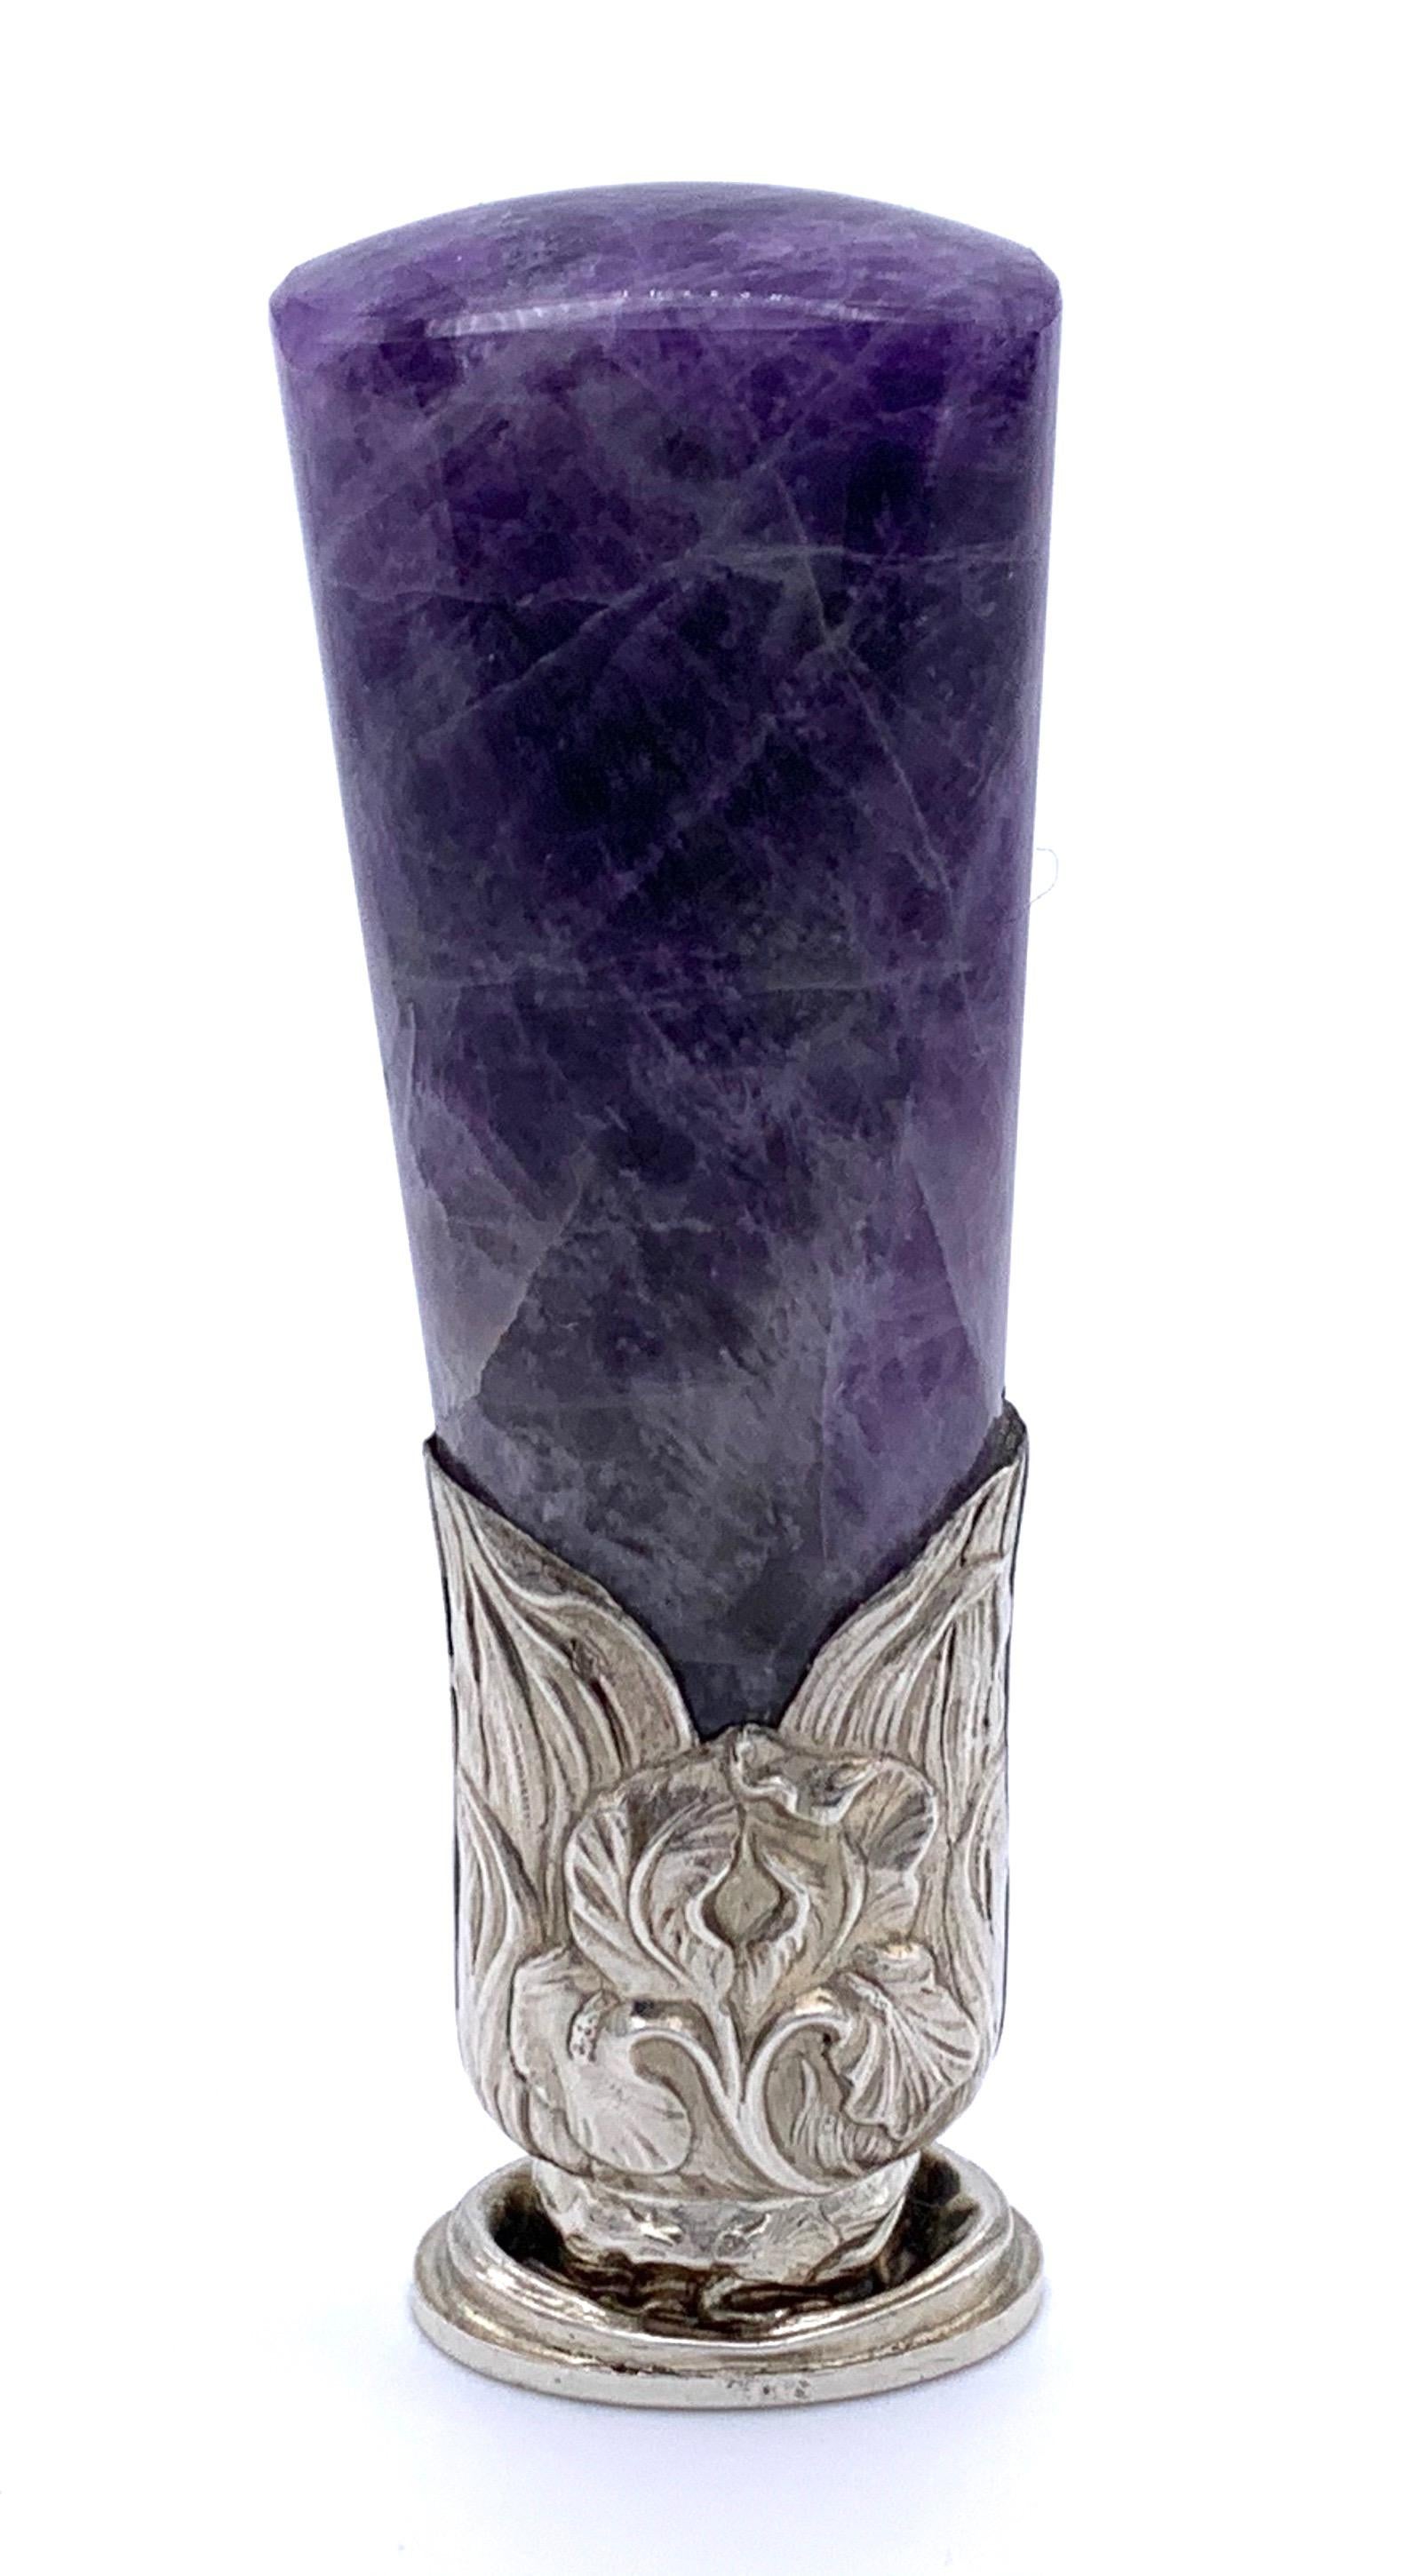 Dieses ungewöhnliche französische Tischsiegel aus Silber mit einem klobigen Griff aus violettem Fluorit wurde um 1895 in Handarbeit hergestellt. Der Flussspat ist in eine Silberfassung gefasst und mit Iris und Blättern verziert. Das ovale Siegel